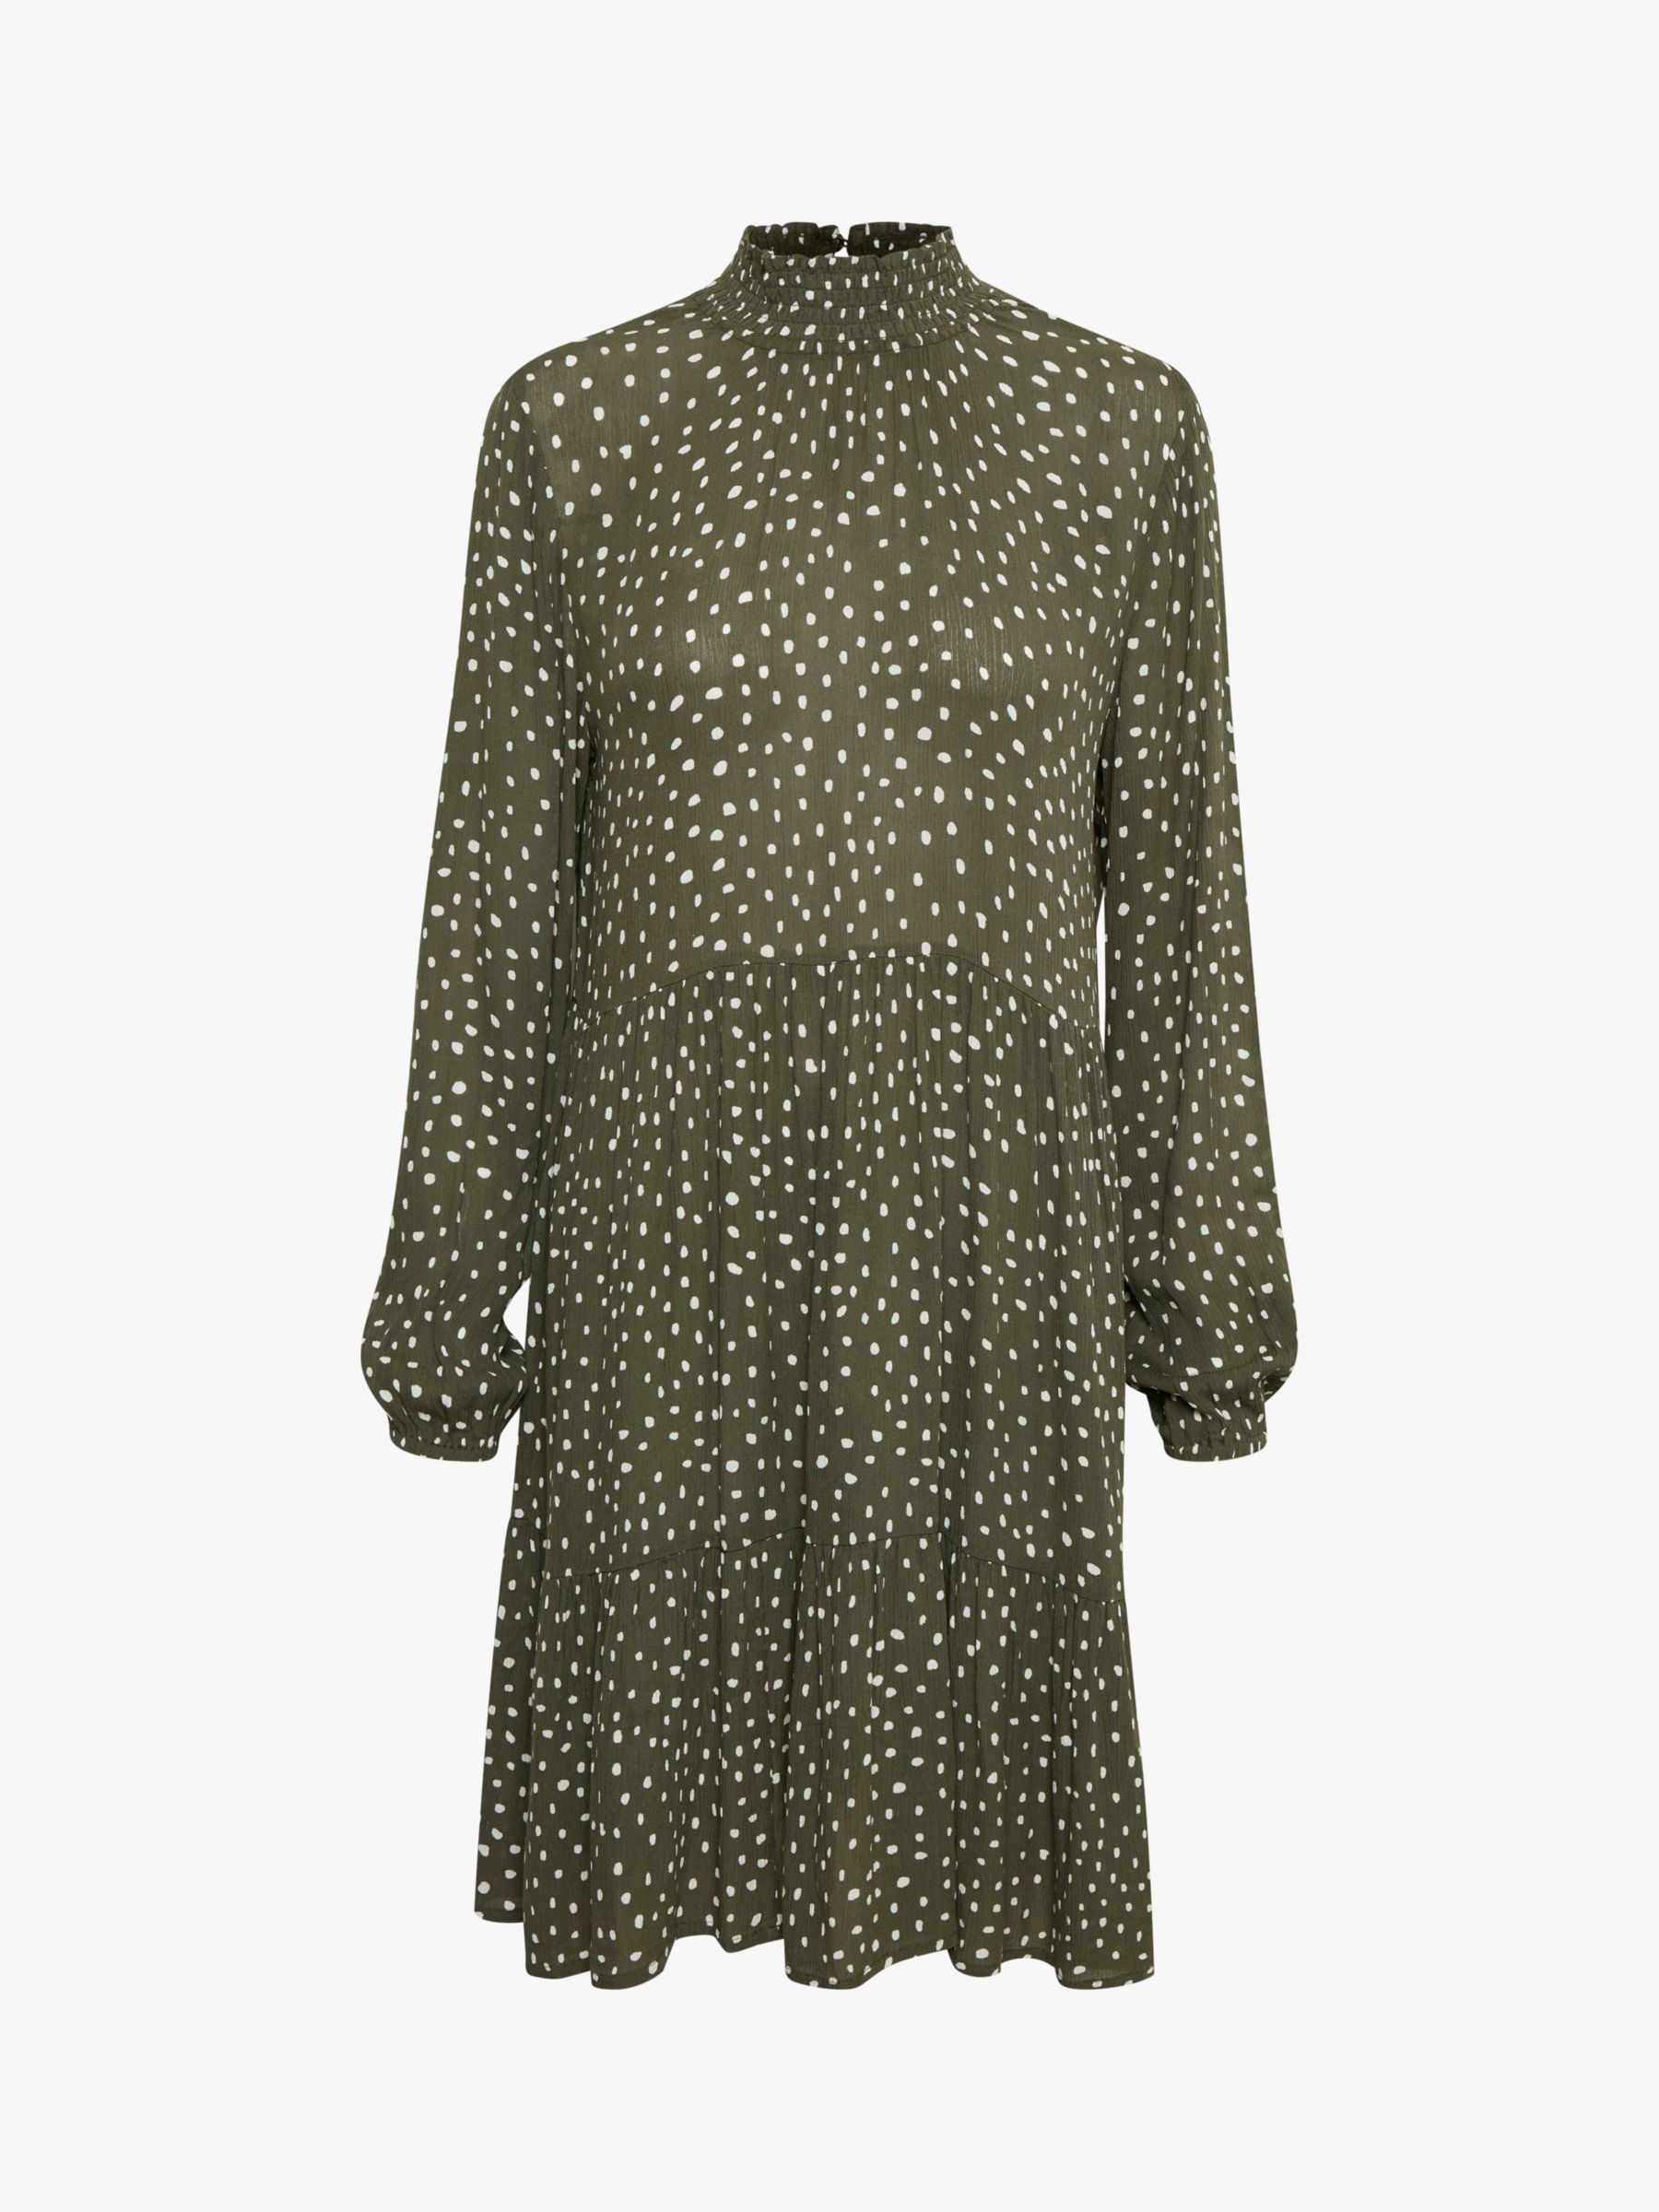 Buy KAFFE Billie Amber Dot Print Dress, Grape Leaf/Chalk Dot Online at johnlewis.com